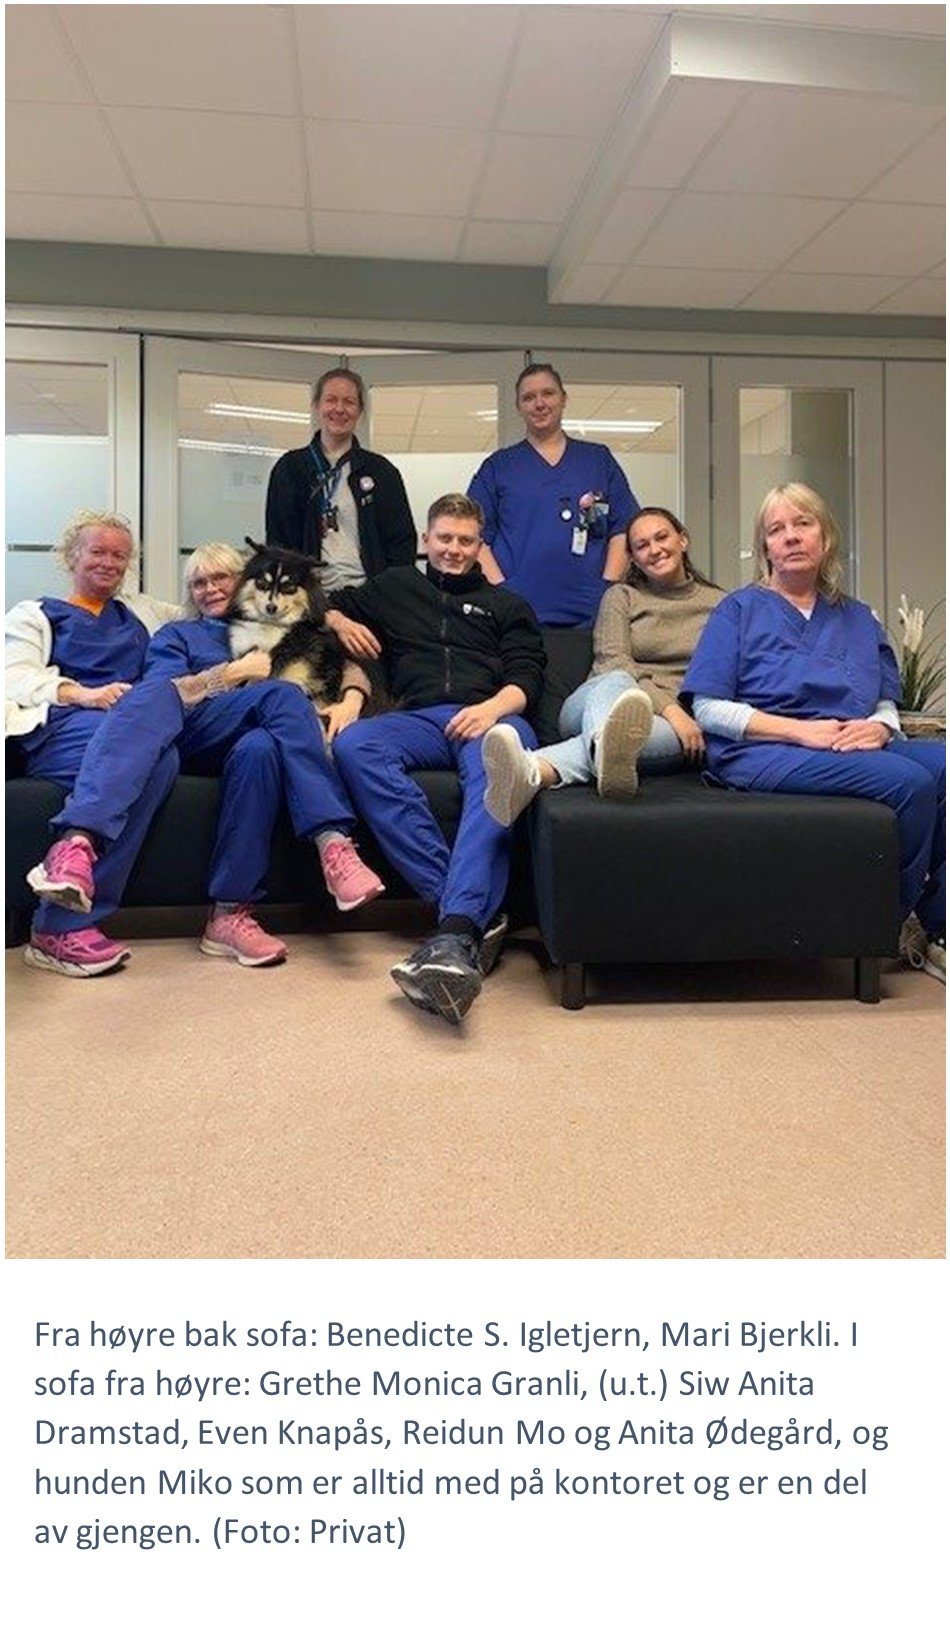 Helsepersonell ansatte i Indre Østfold kommune Grethe Monica Granli, Siw Anita Dramstad, Even Knapås, Reidun Mo og Anita Ødegård, og hunden Miko.